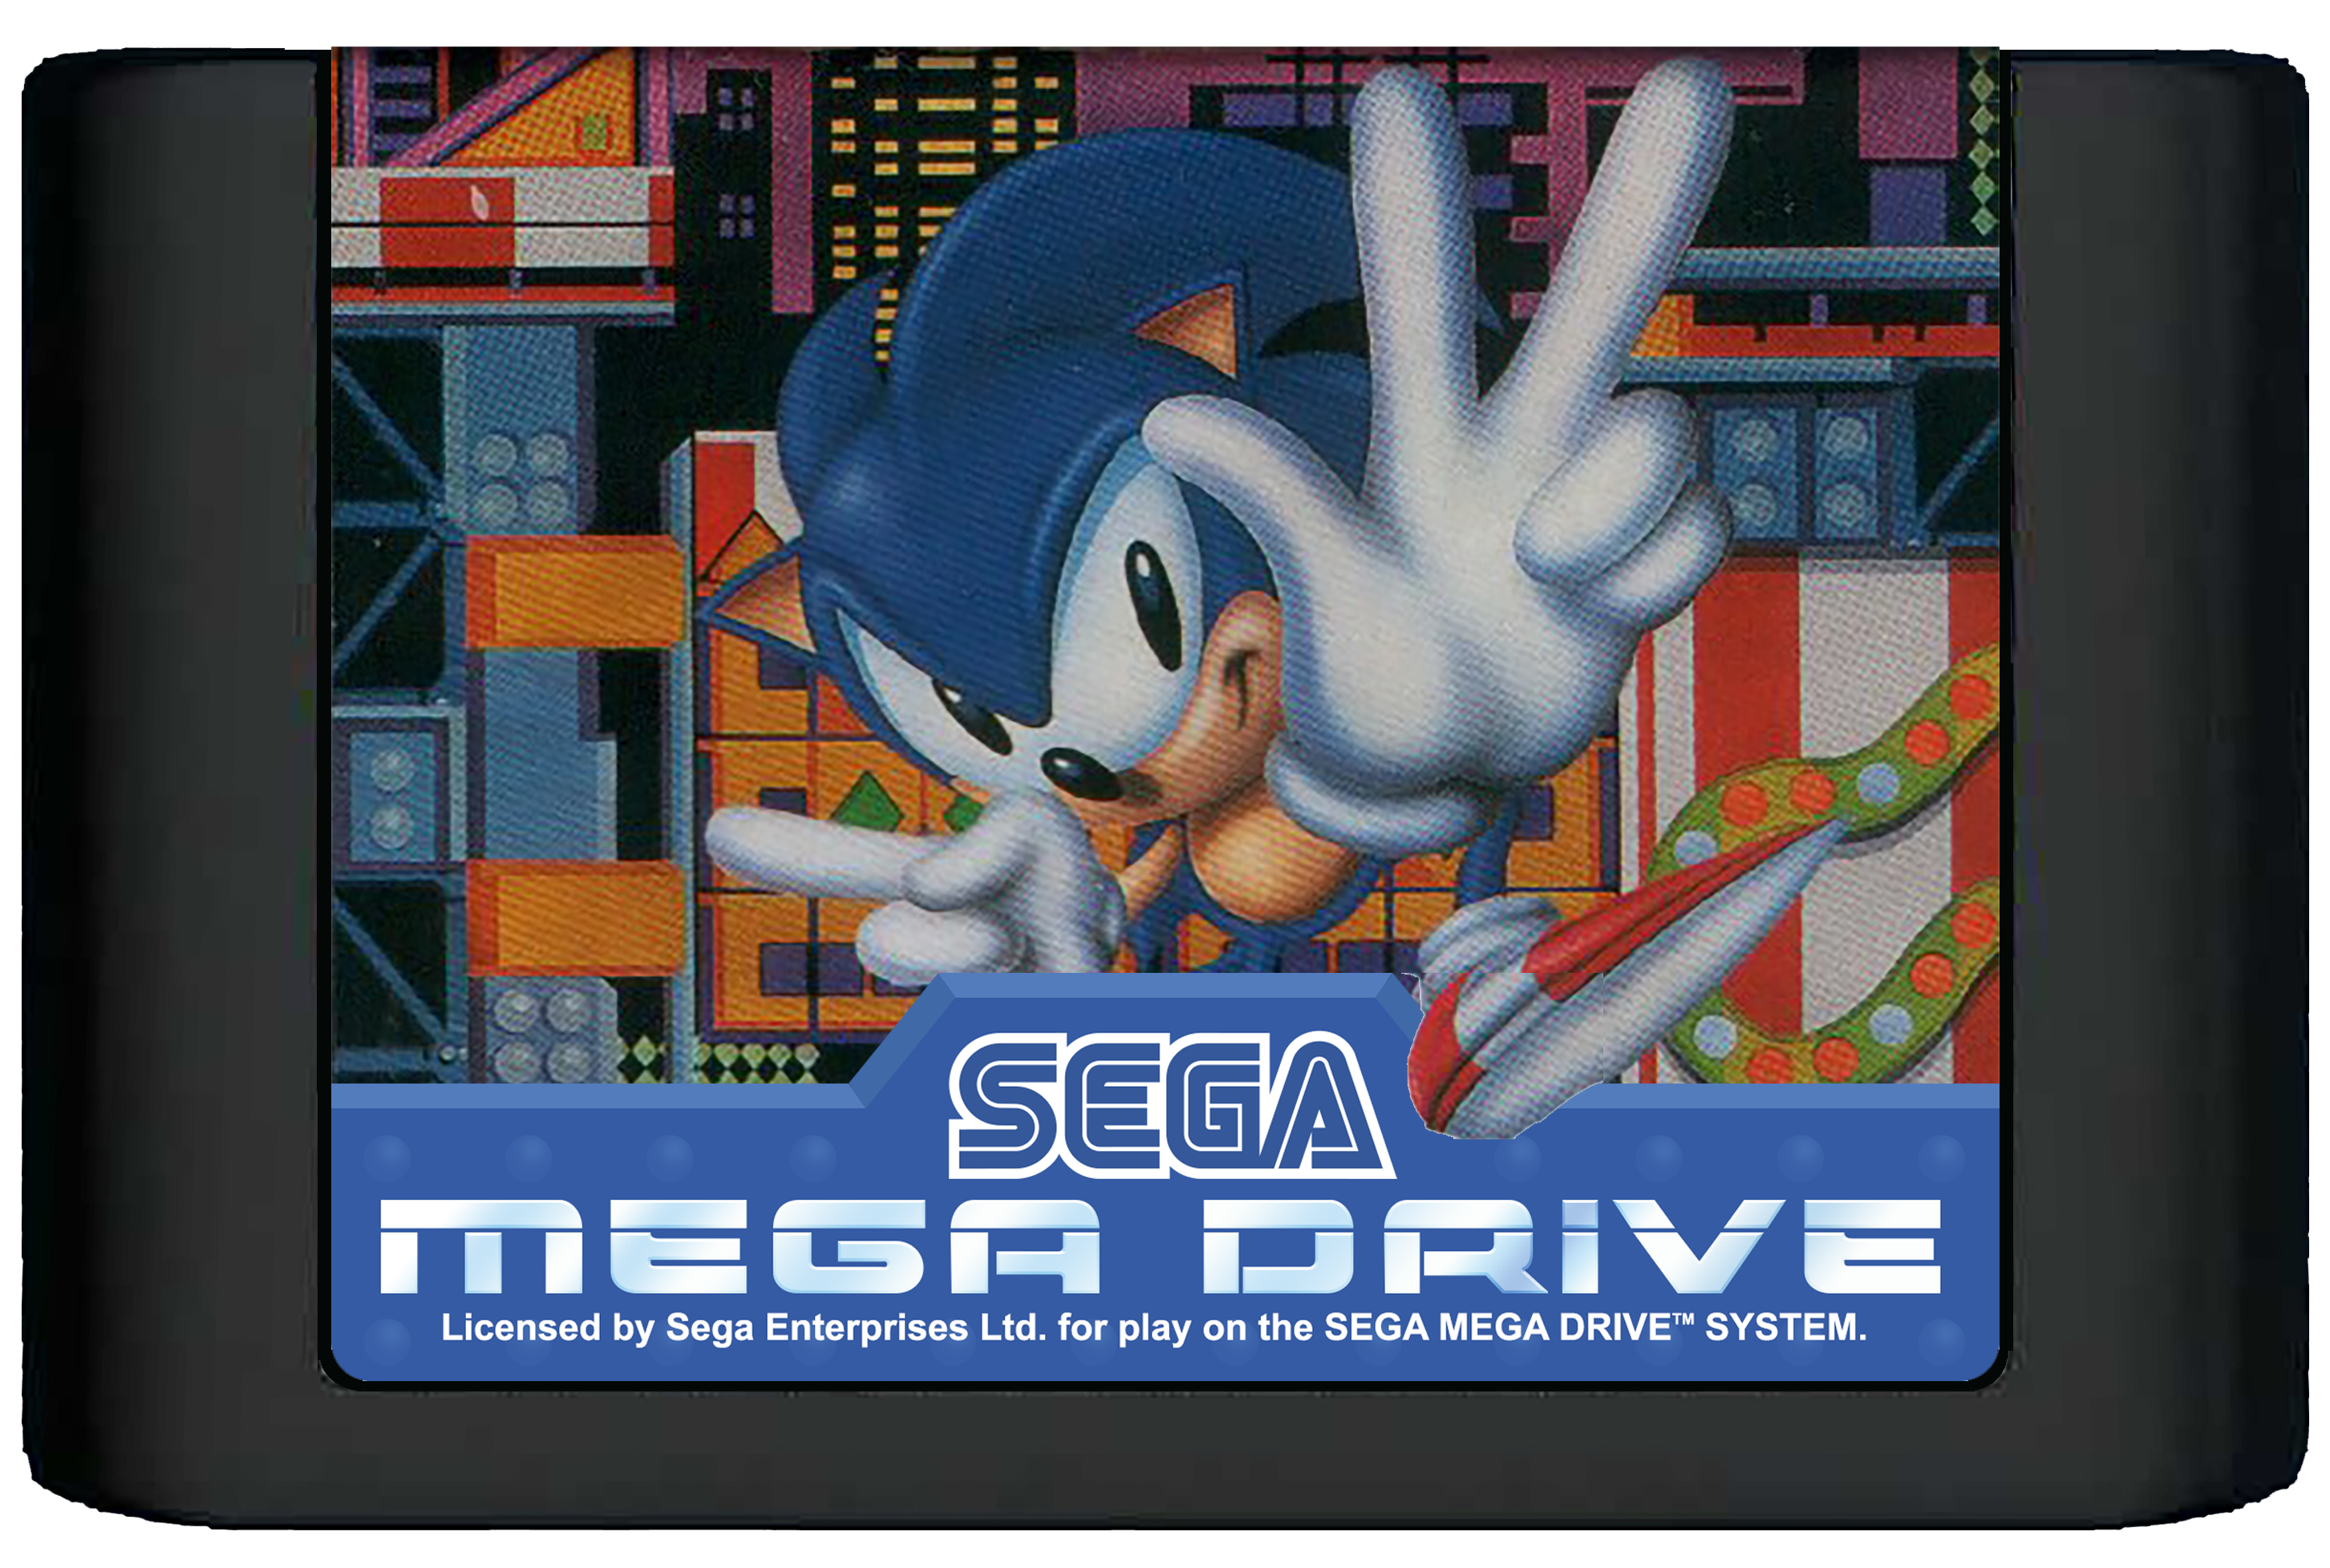 Sega Mega Drive Cartridge Sonic 1. Sonic Cartridge Sega Mega Drive. Картридж Sonic the Hedgehog 2 (Sega Mega Drive). Картридж Sega Megadrive Sonic the Hedgehog. Соник мега драйв